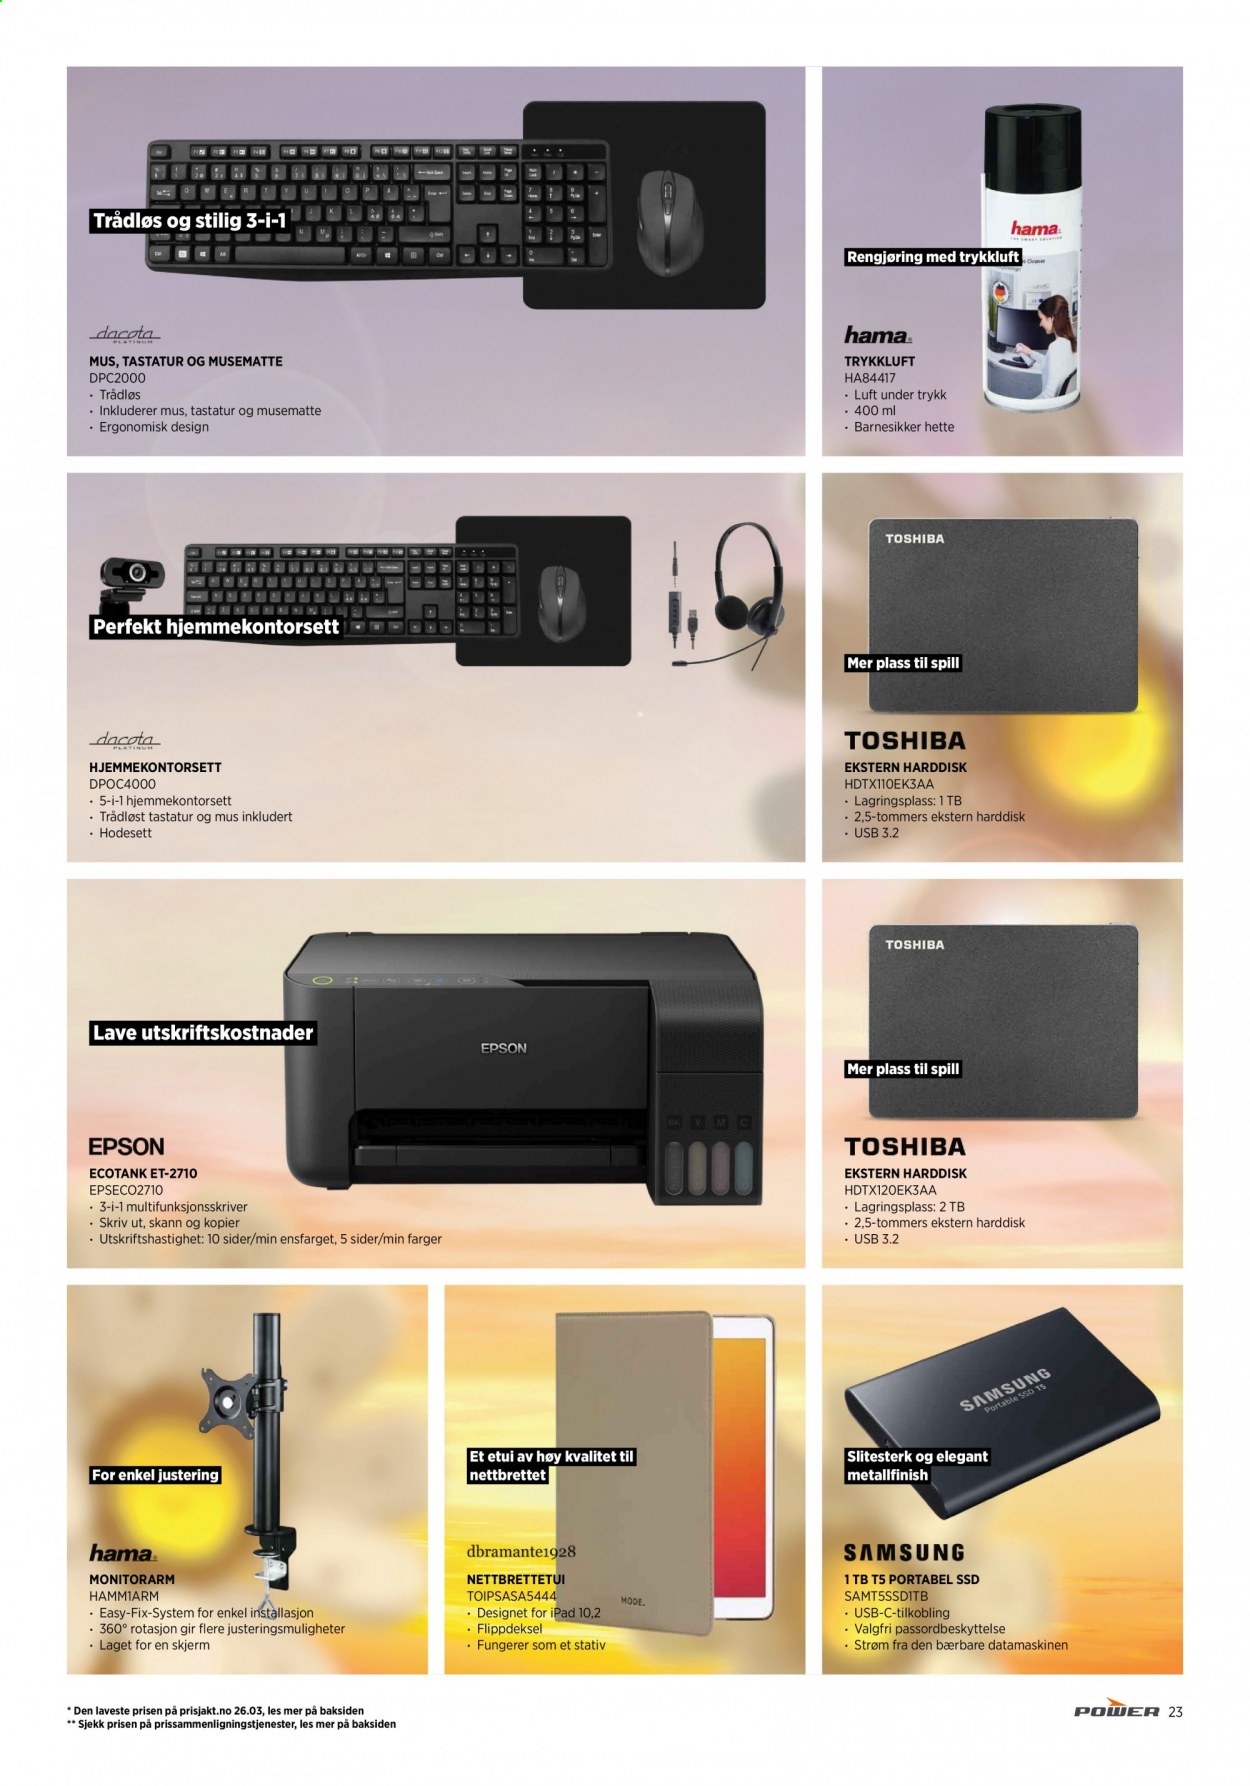 thumbnail - Kundeavis Power - 15.4.2021 - 24.4.2021 - Produkter fra tilbudsaviser - Samsung, IPad, Dacota, musematte, ekstern harddisk, tastatur, skjerm, stativ, multifunksjonsskriver. Side 23.